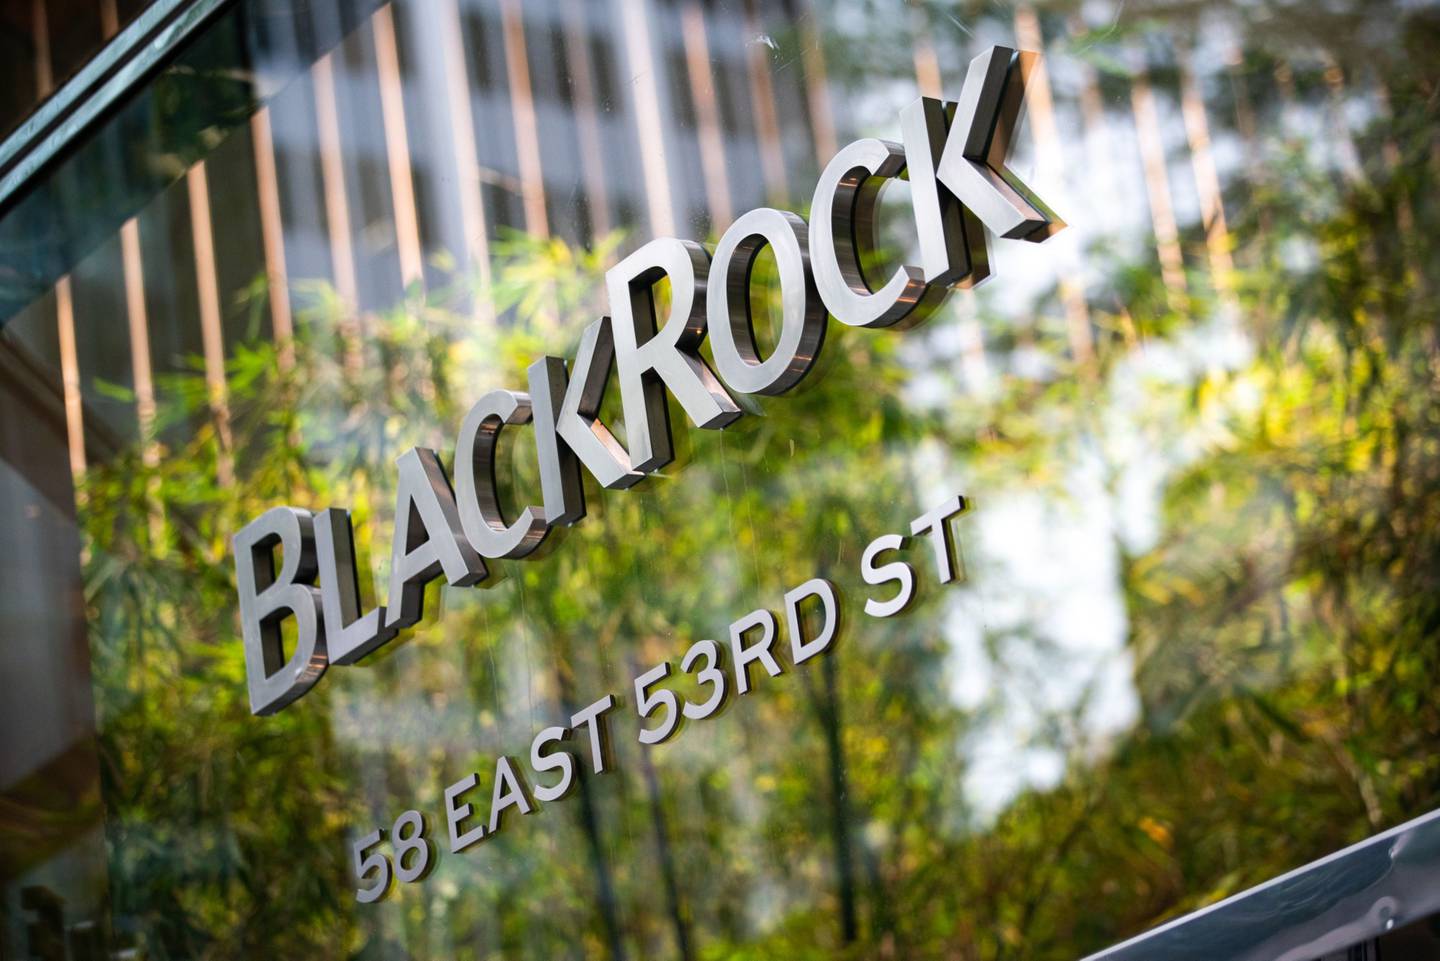 El logo de BlackRockdfd